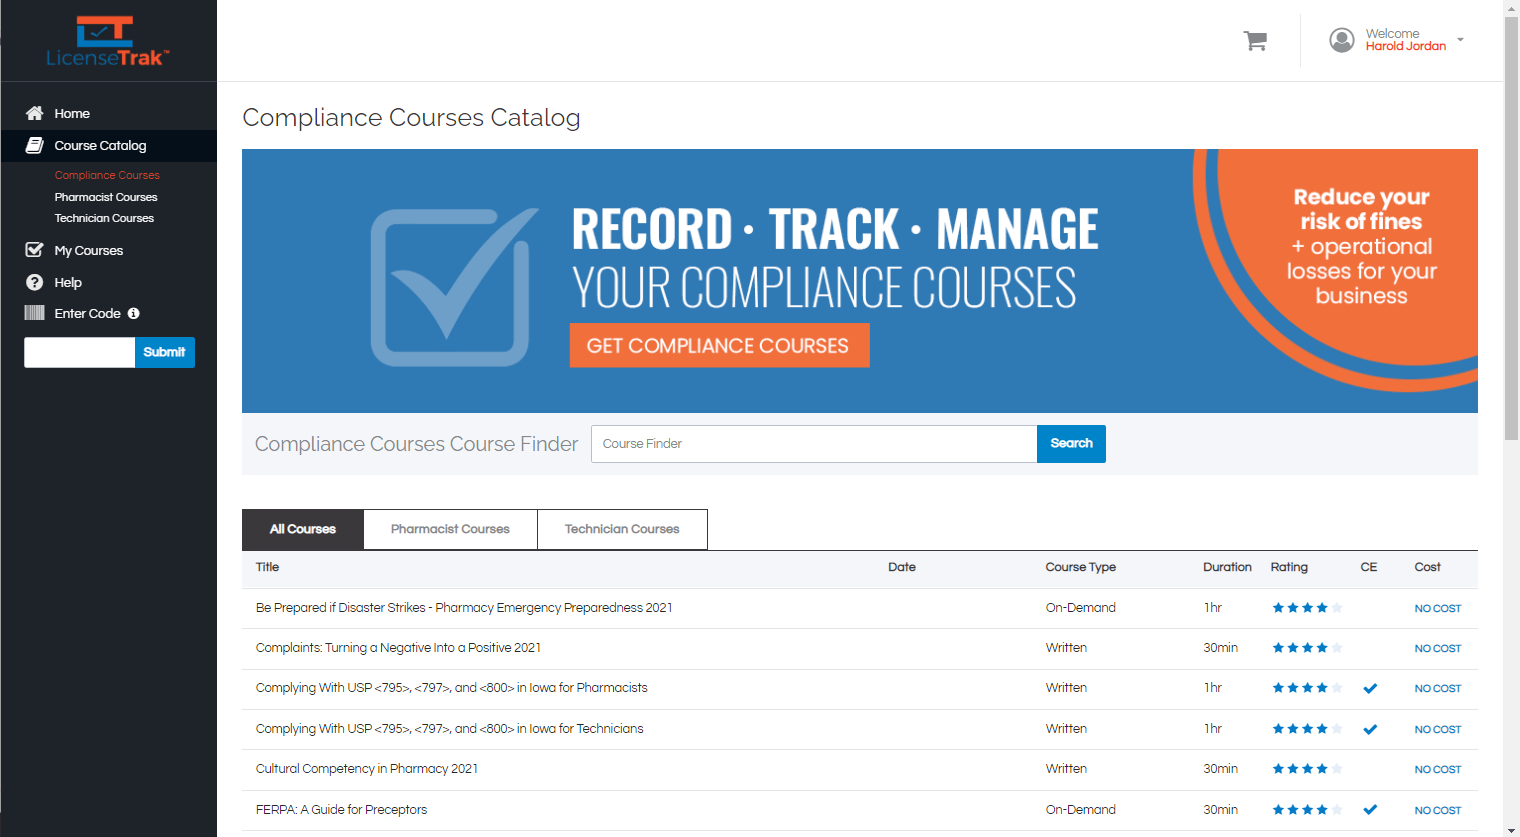 LicenseTrak LMS - Compliance Course Catalog